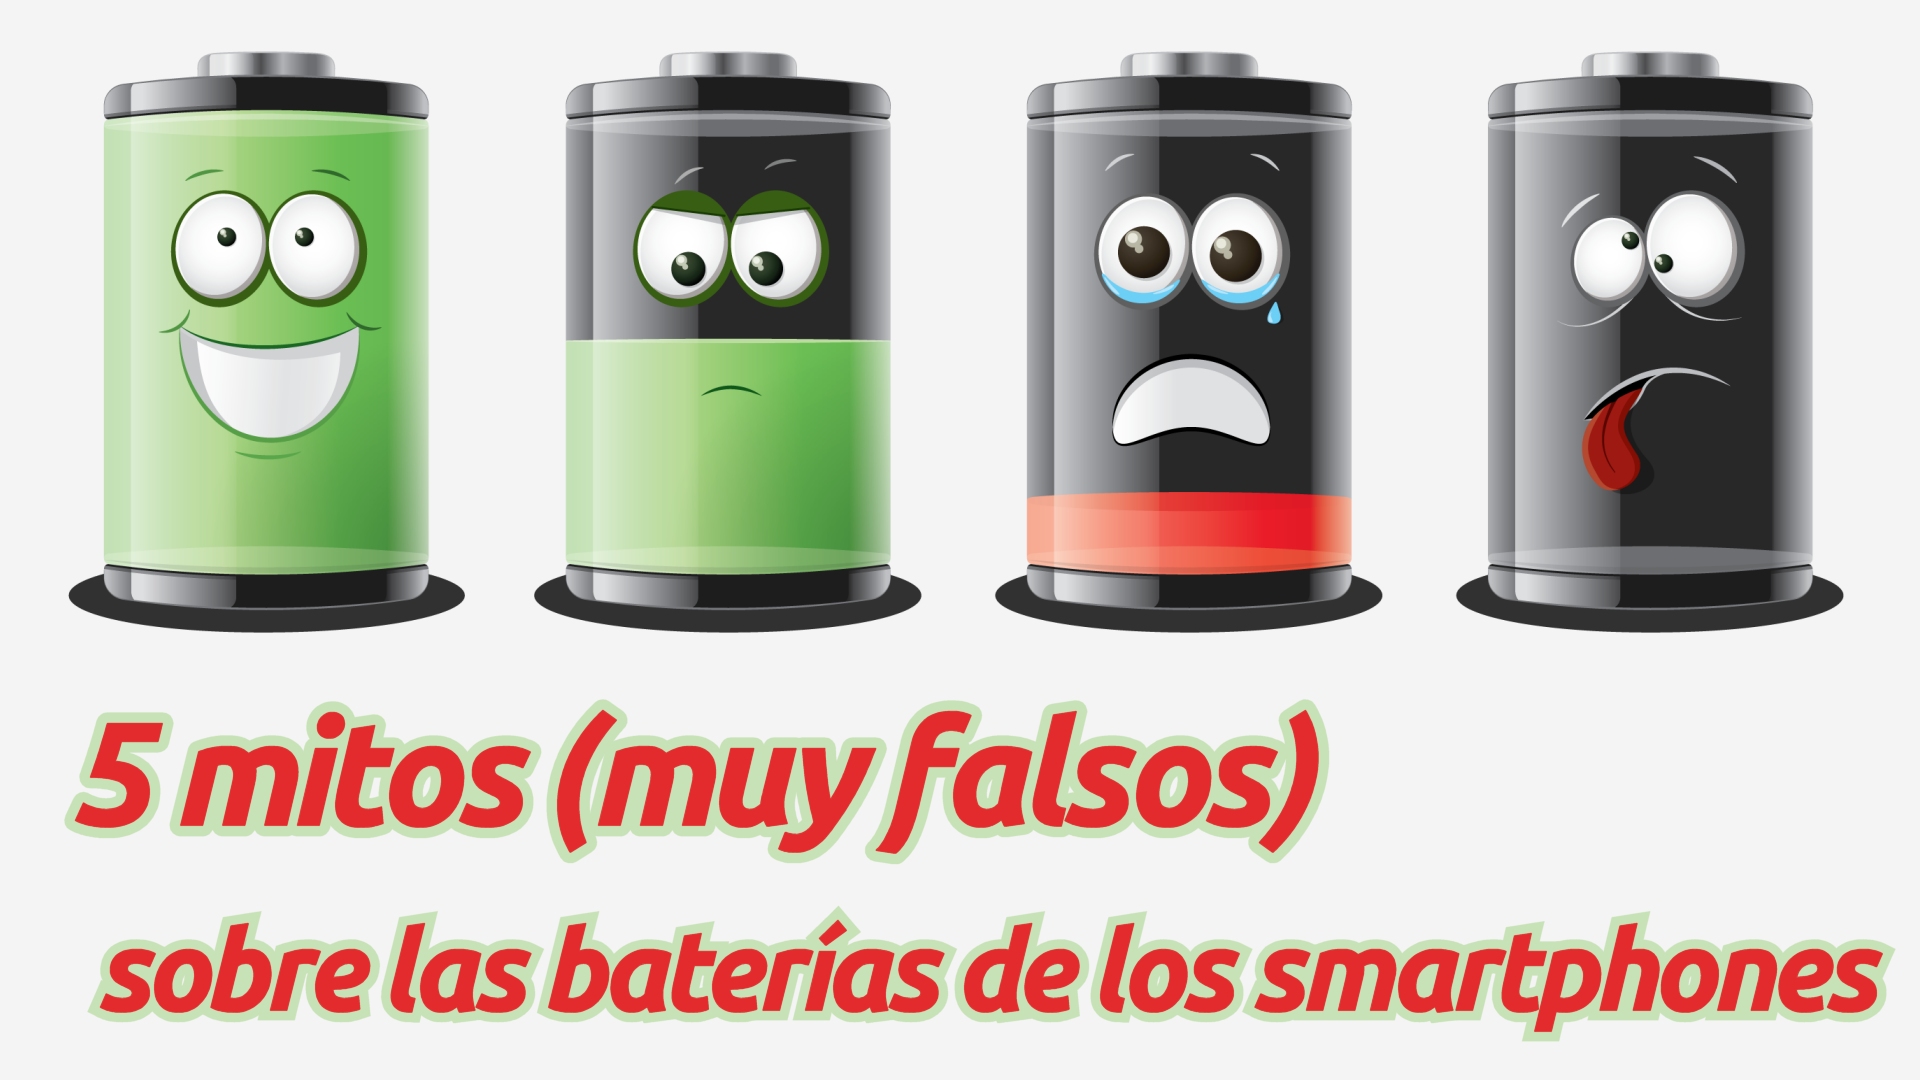 5 mitos (muy falsos) sobre las baterías de los smartphones